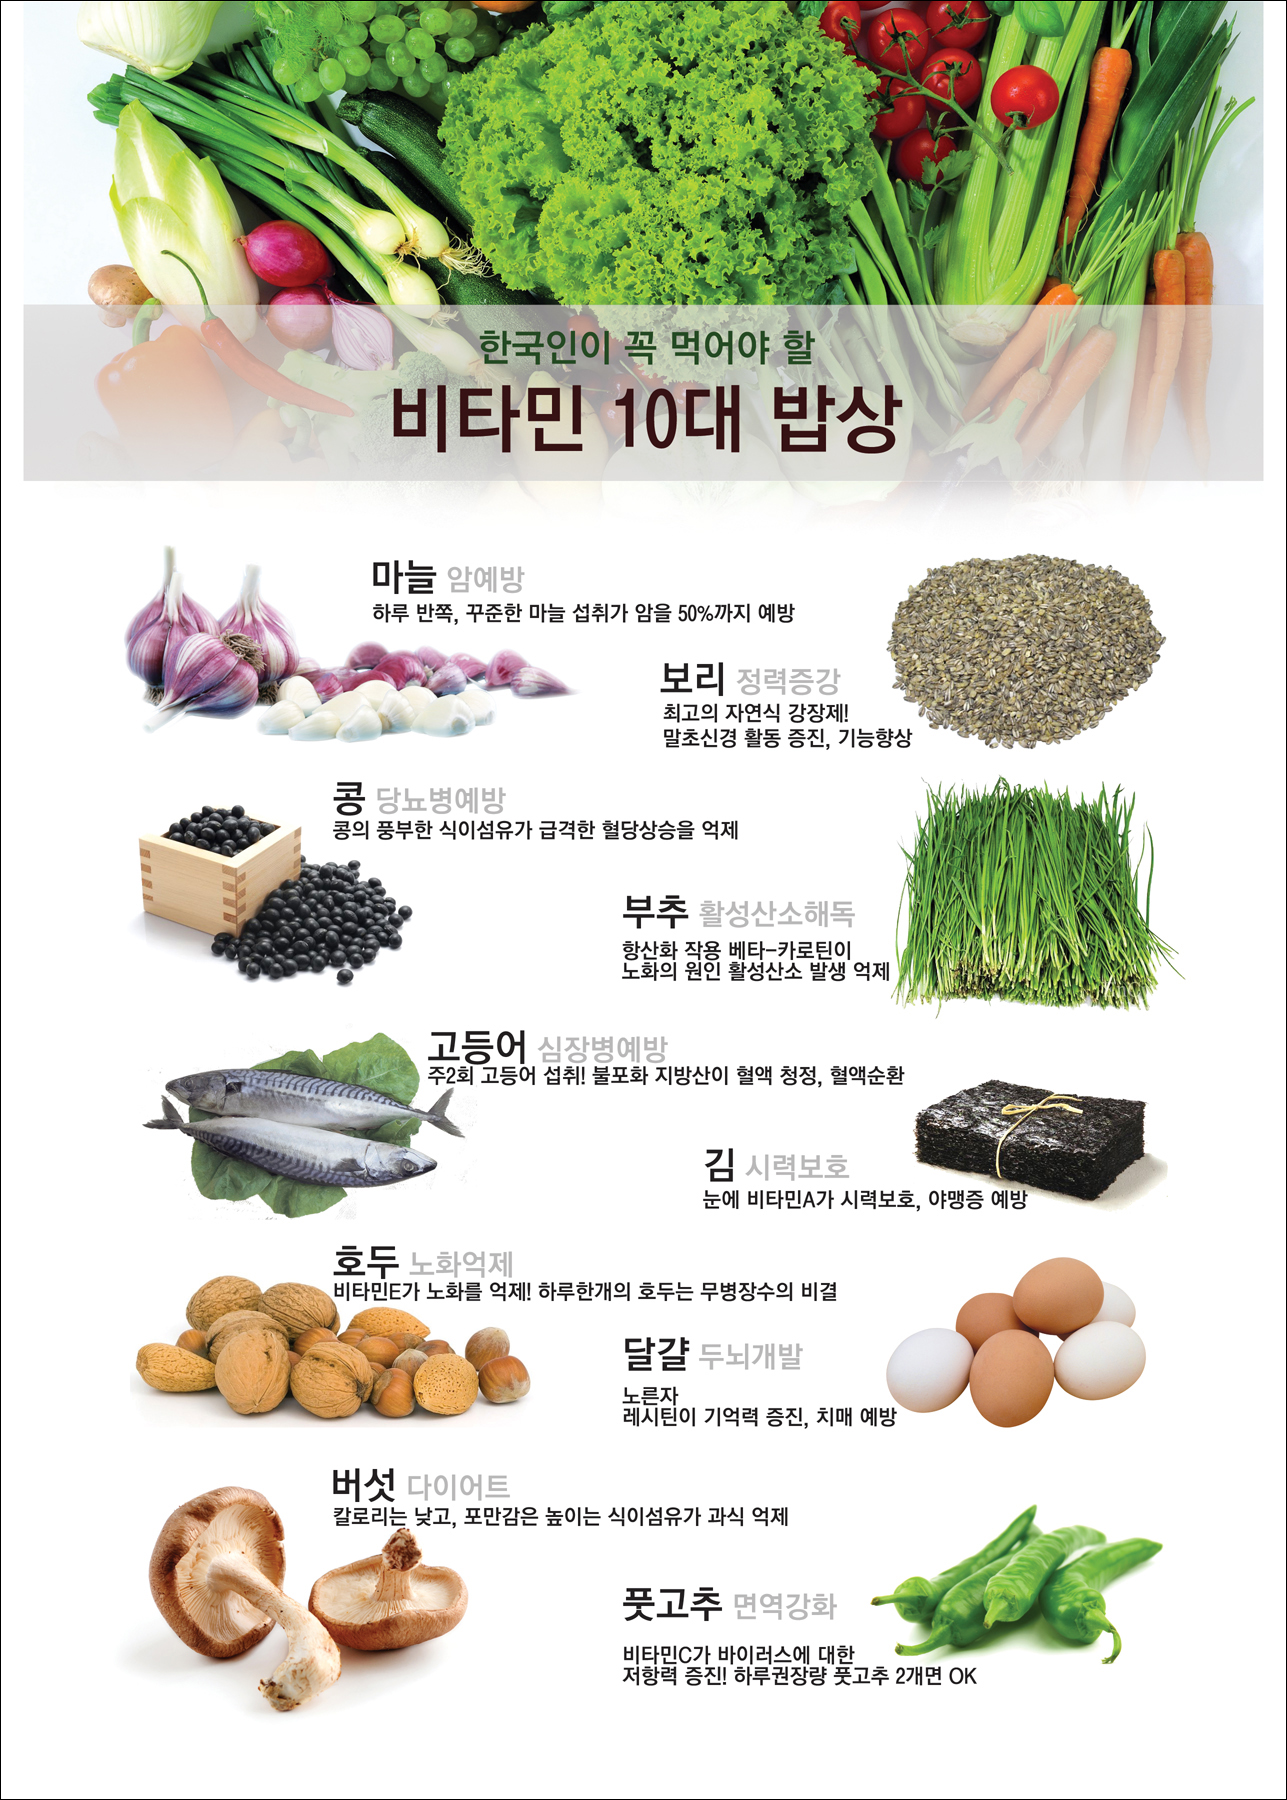 한국인이 꼭 먹어야 할 비타민 10대 밥상